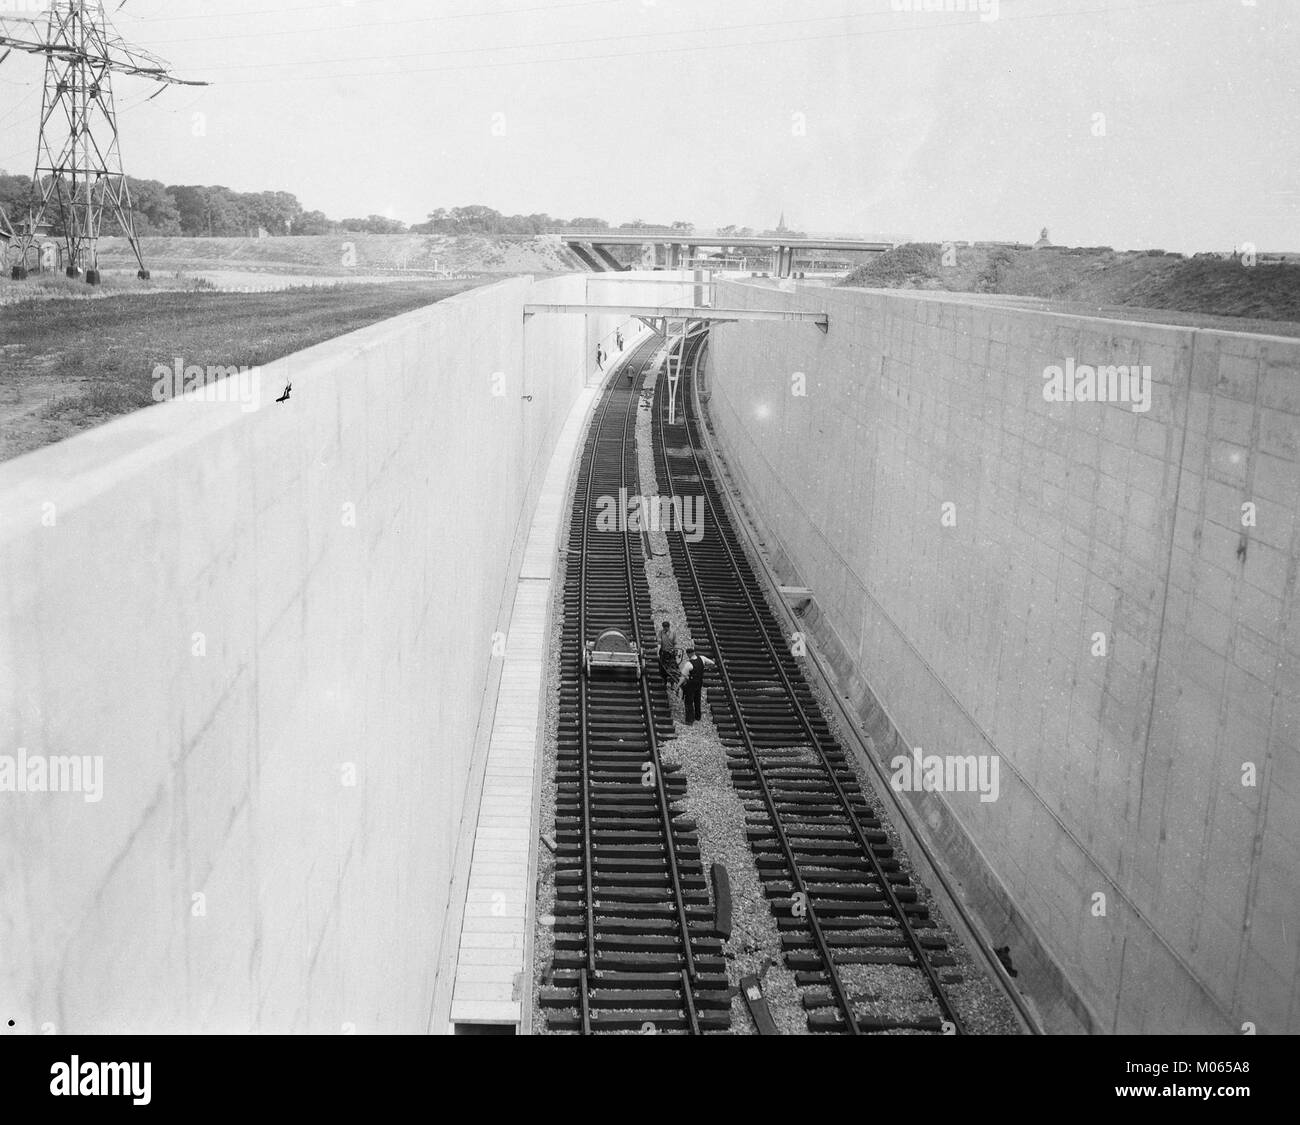 Bouw Velsertunnel, elektrische leidingen bij de spoorwegtunnel, Bestanddeelnr 908-7412 Stock Photo